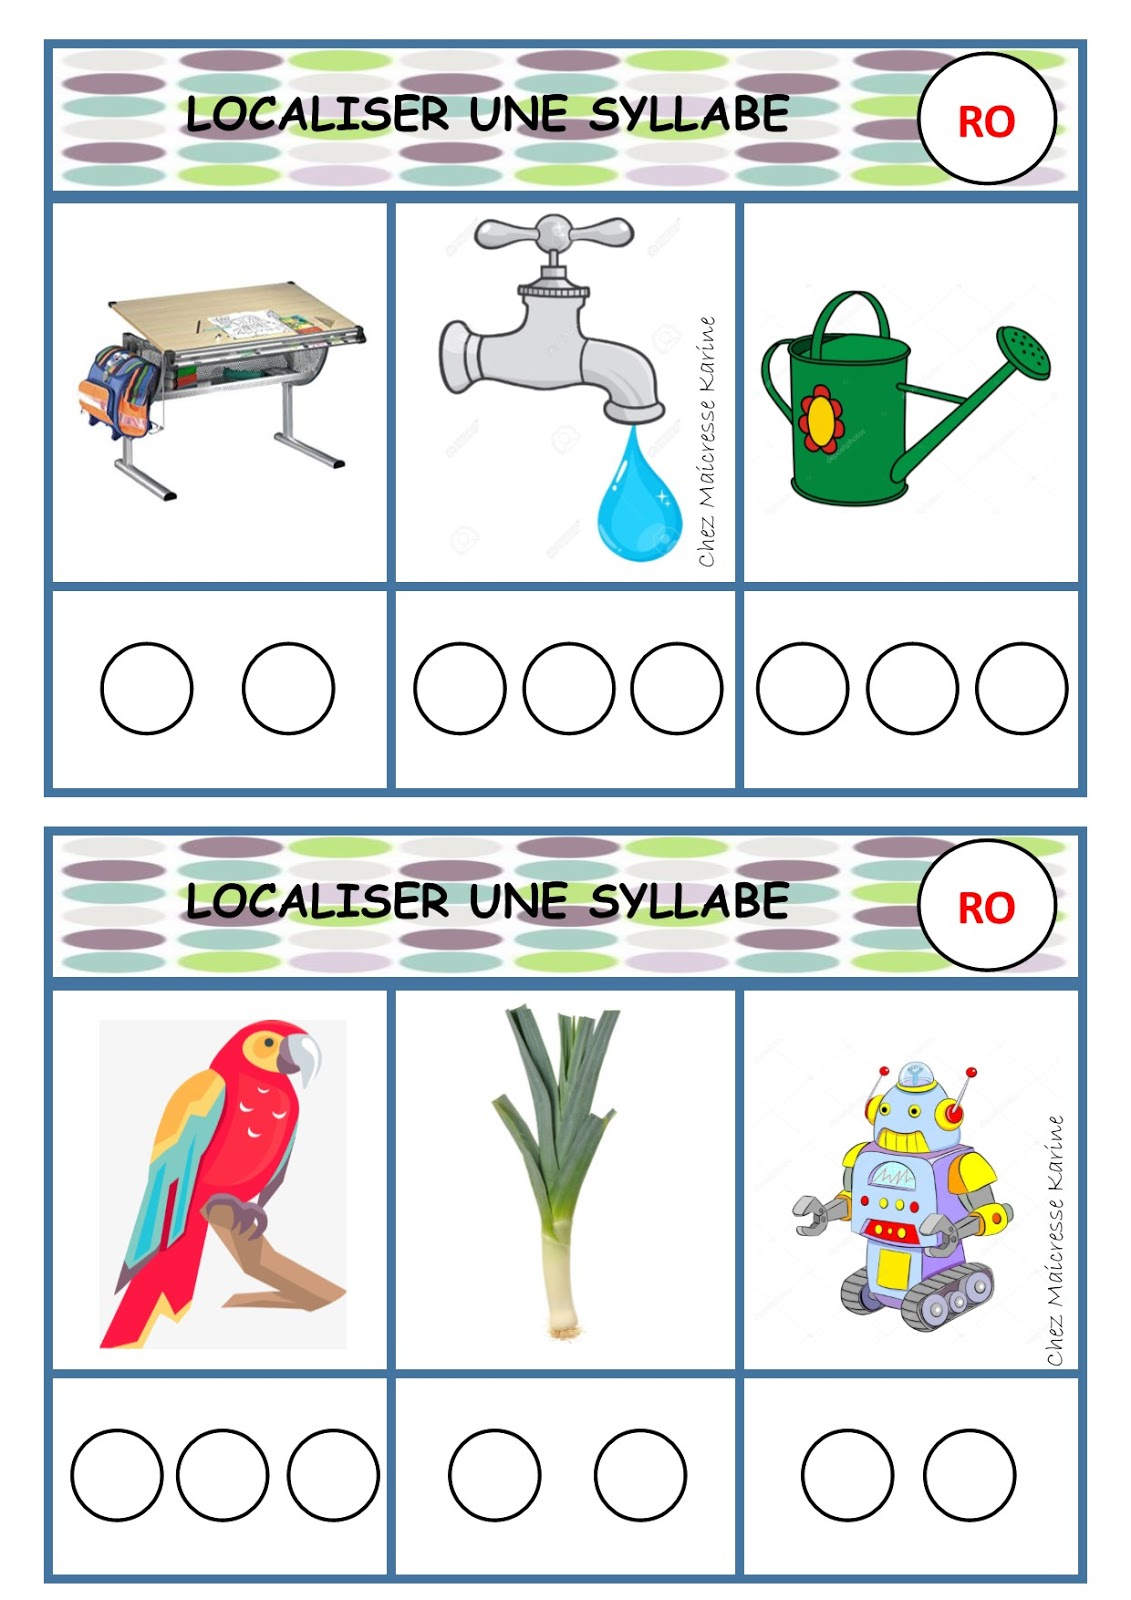 Chez Maicresse Karine: Localiser Des Syllabes - Jeu Phono Gs tout Apprendre Syllabes Maternelle